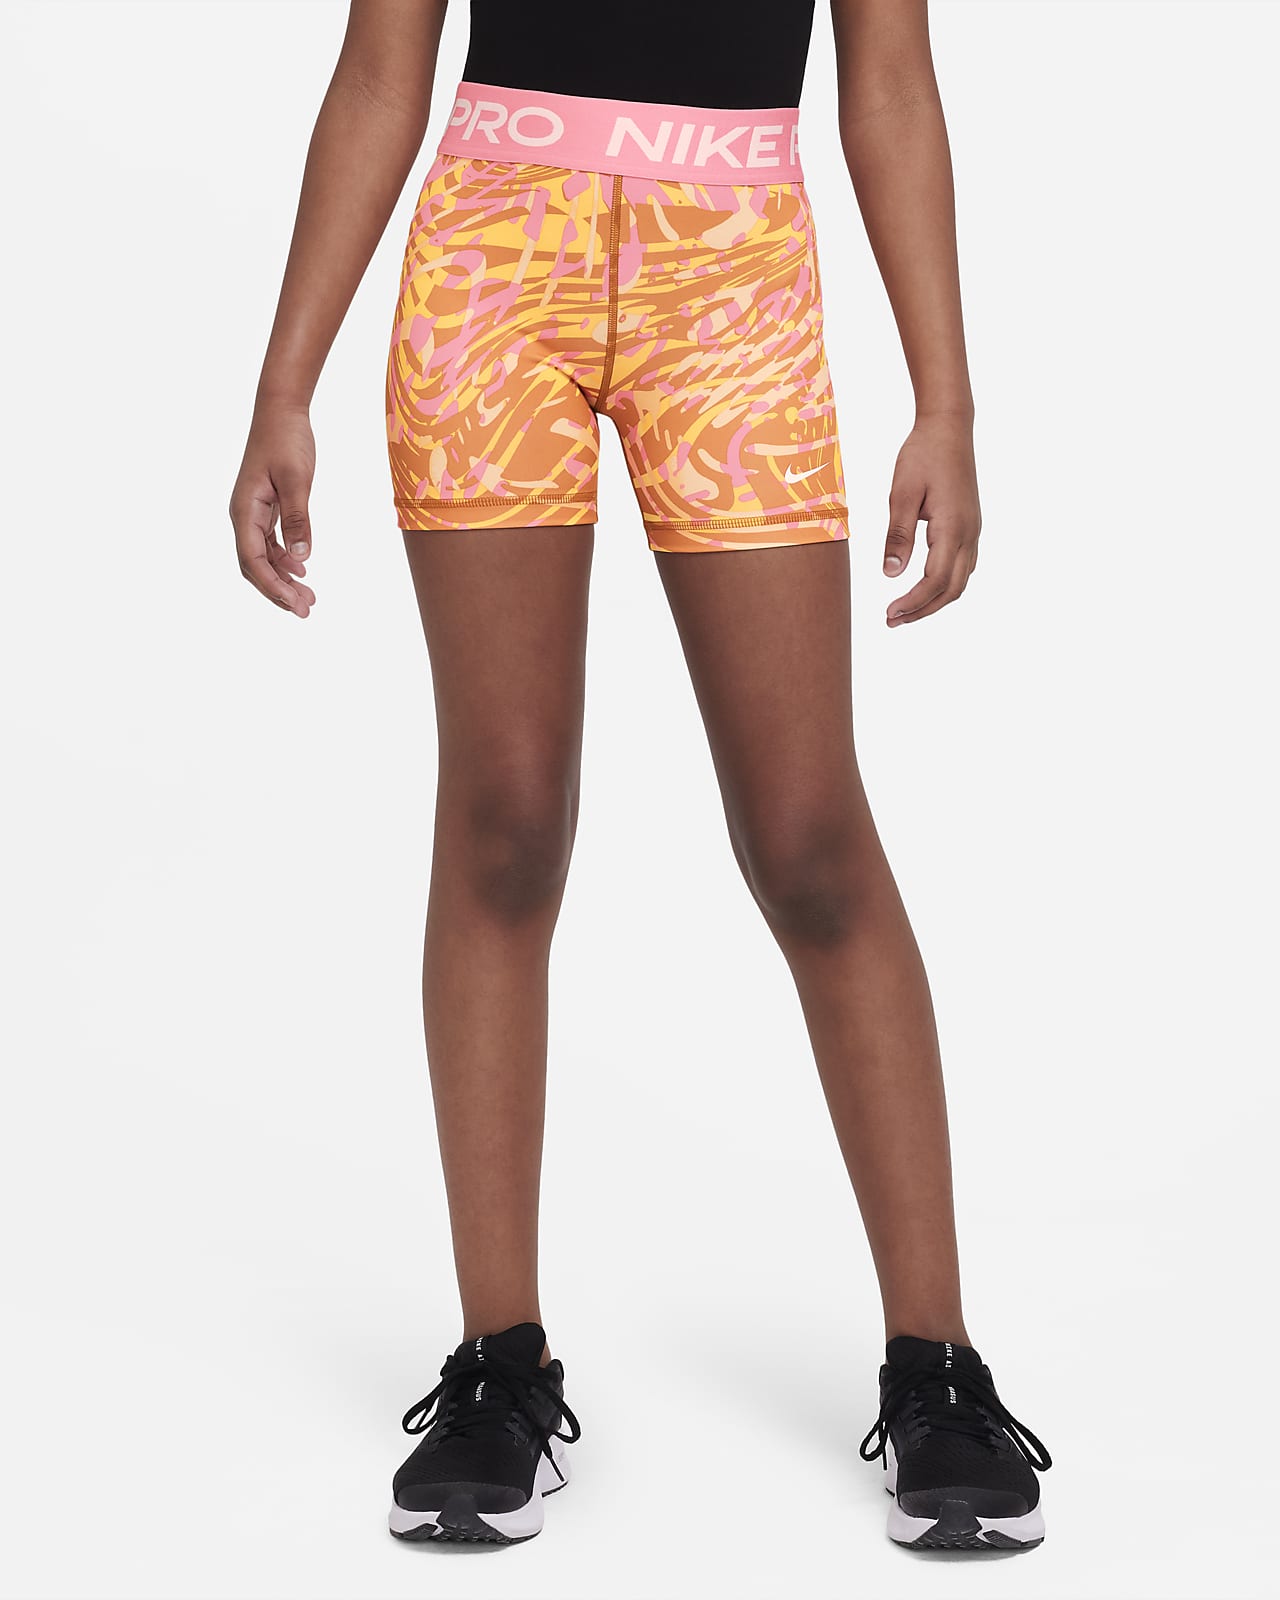 æg skille sig ud Streng Nike Pro Older Kids' (Girls') 8cm (approx.) Shorts. Nike LU